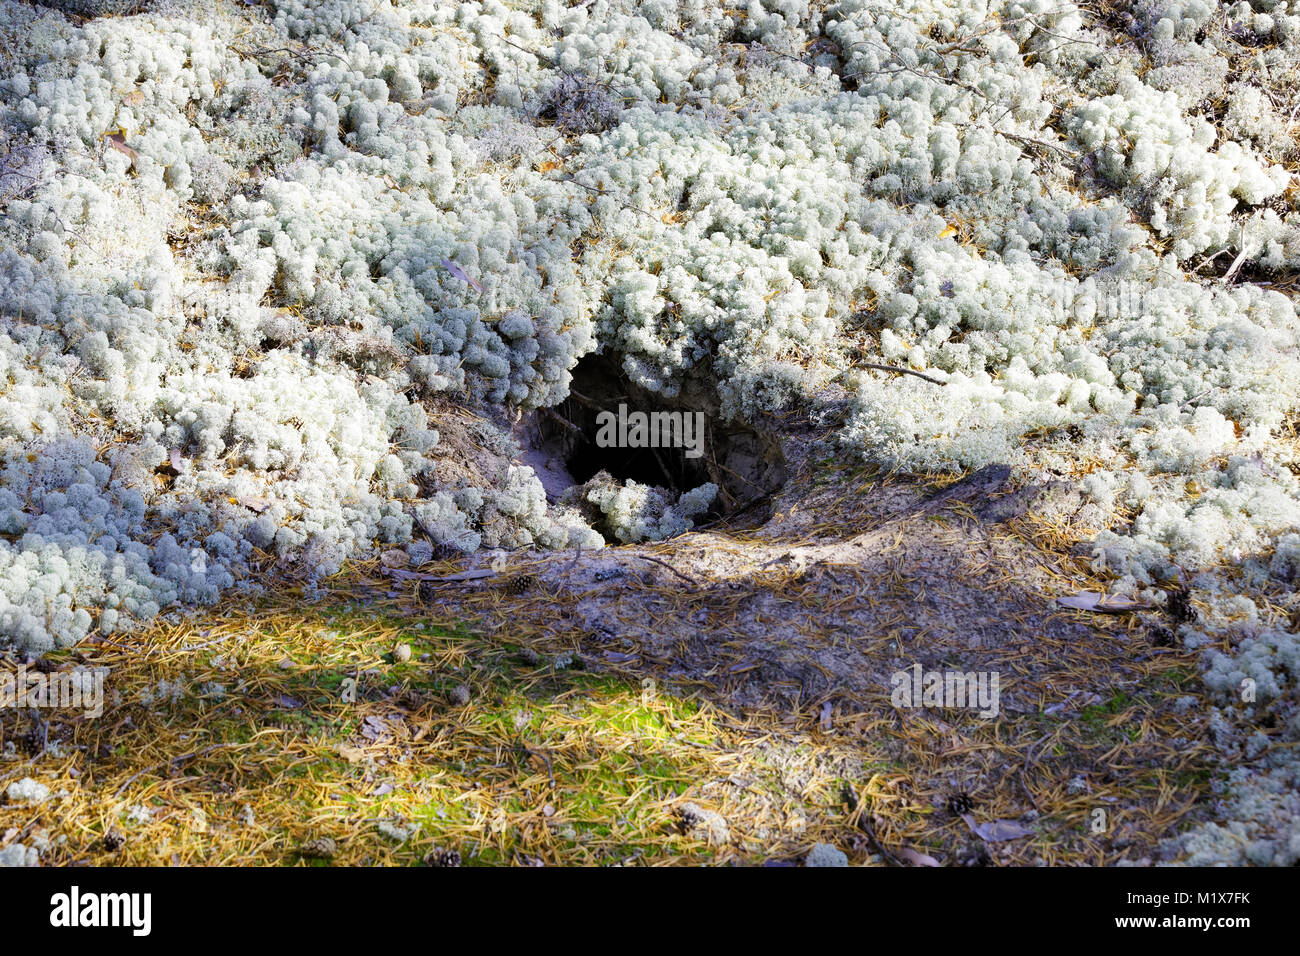 Badger s'enfouissent dans la taïga sibérienne. Une colline à l'intérieur de laquelle vit une famille de blaireaux couvert de mousse de rennes Banque D'Images